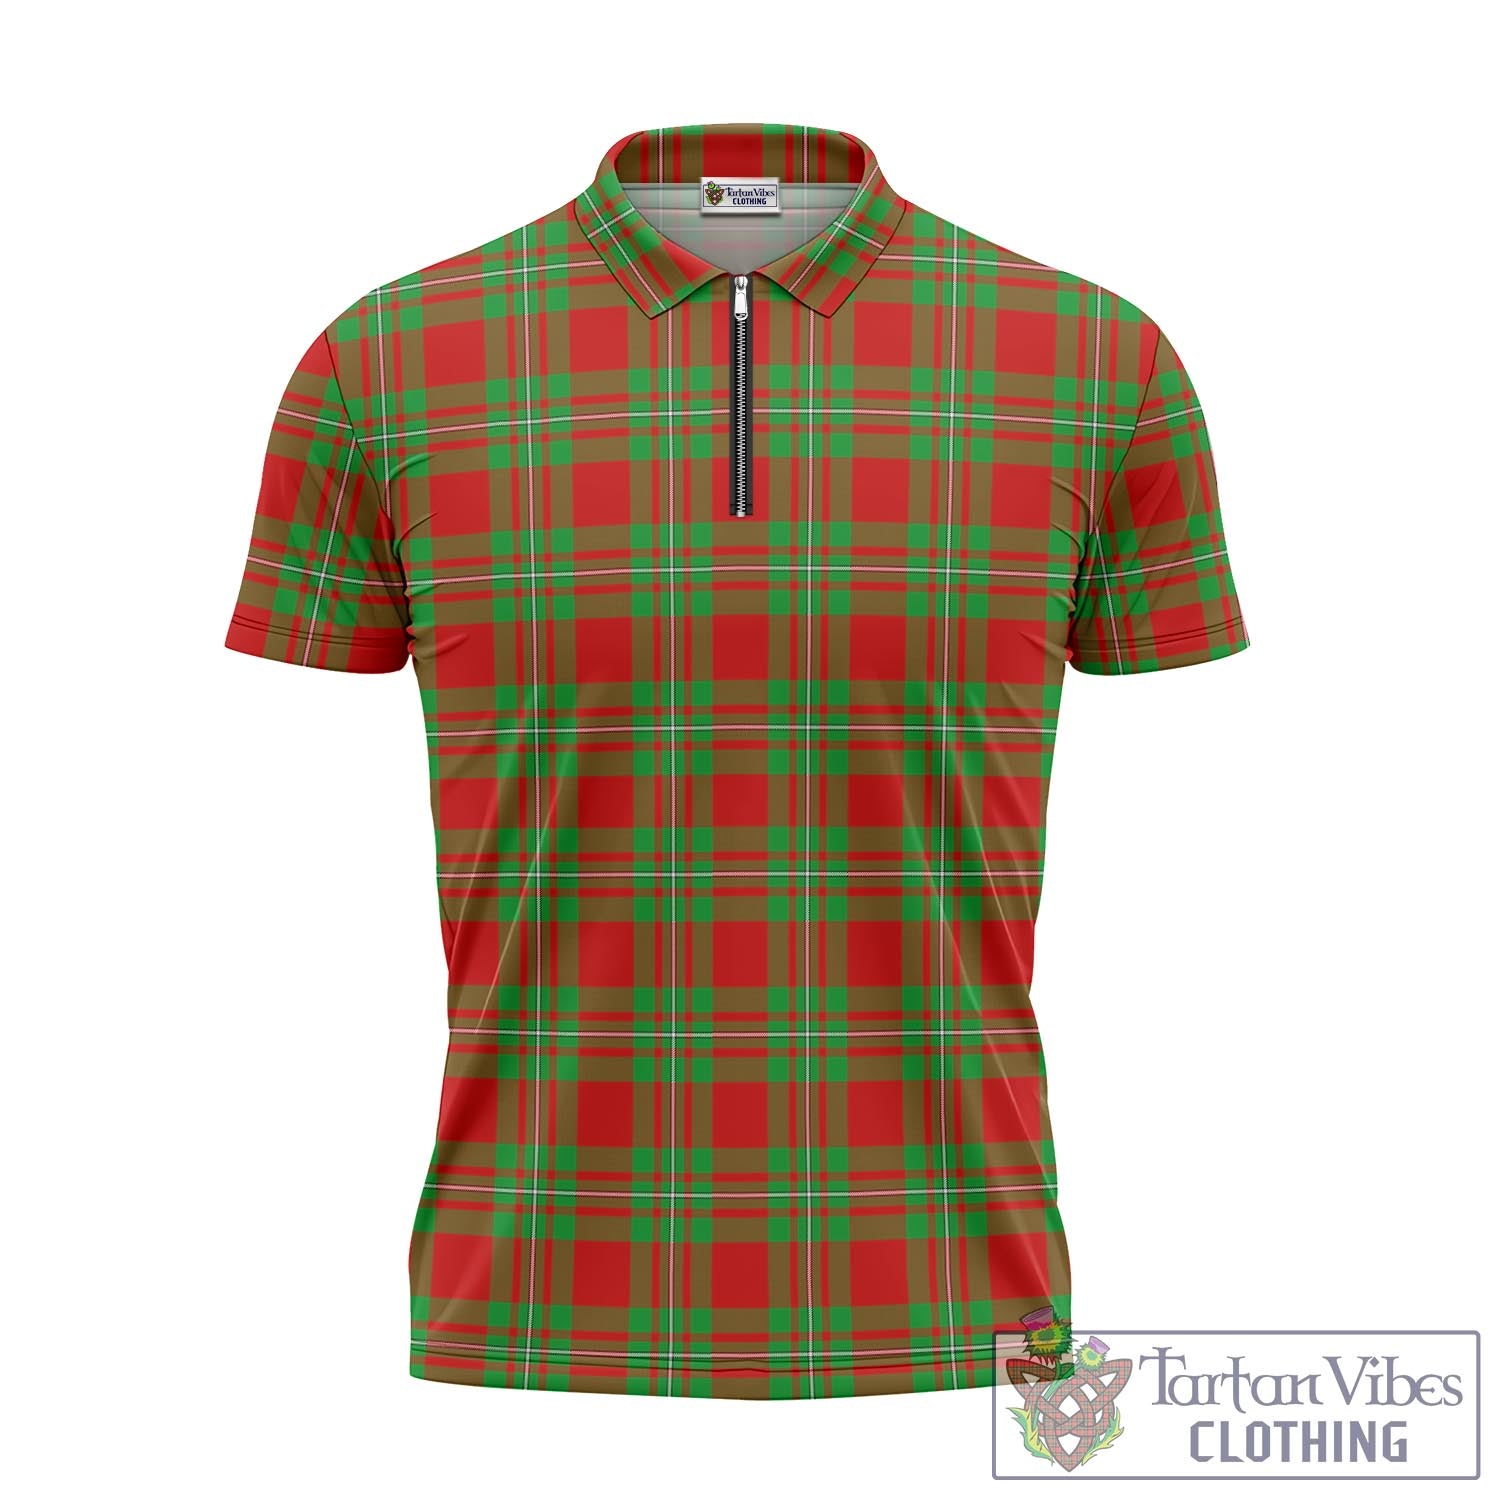 Tartan Vibes Clothing Callander Modern Tartan Zipper Polo Shirt